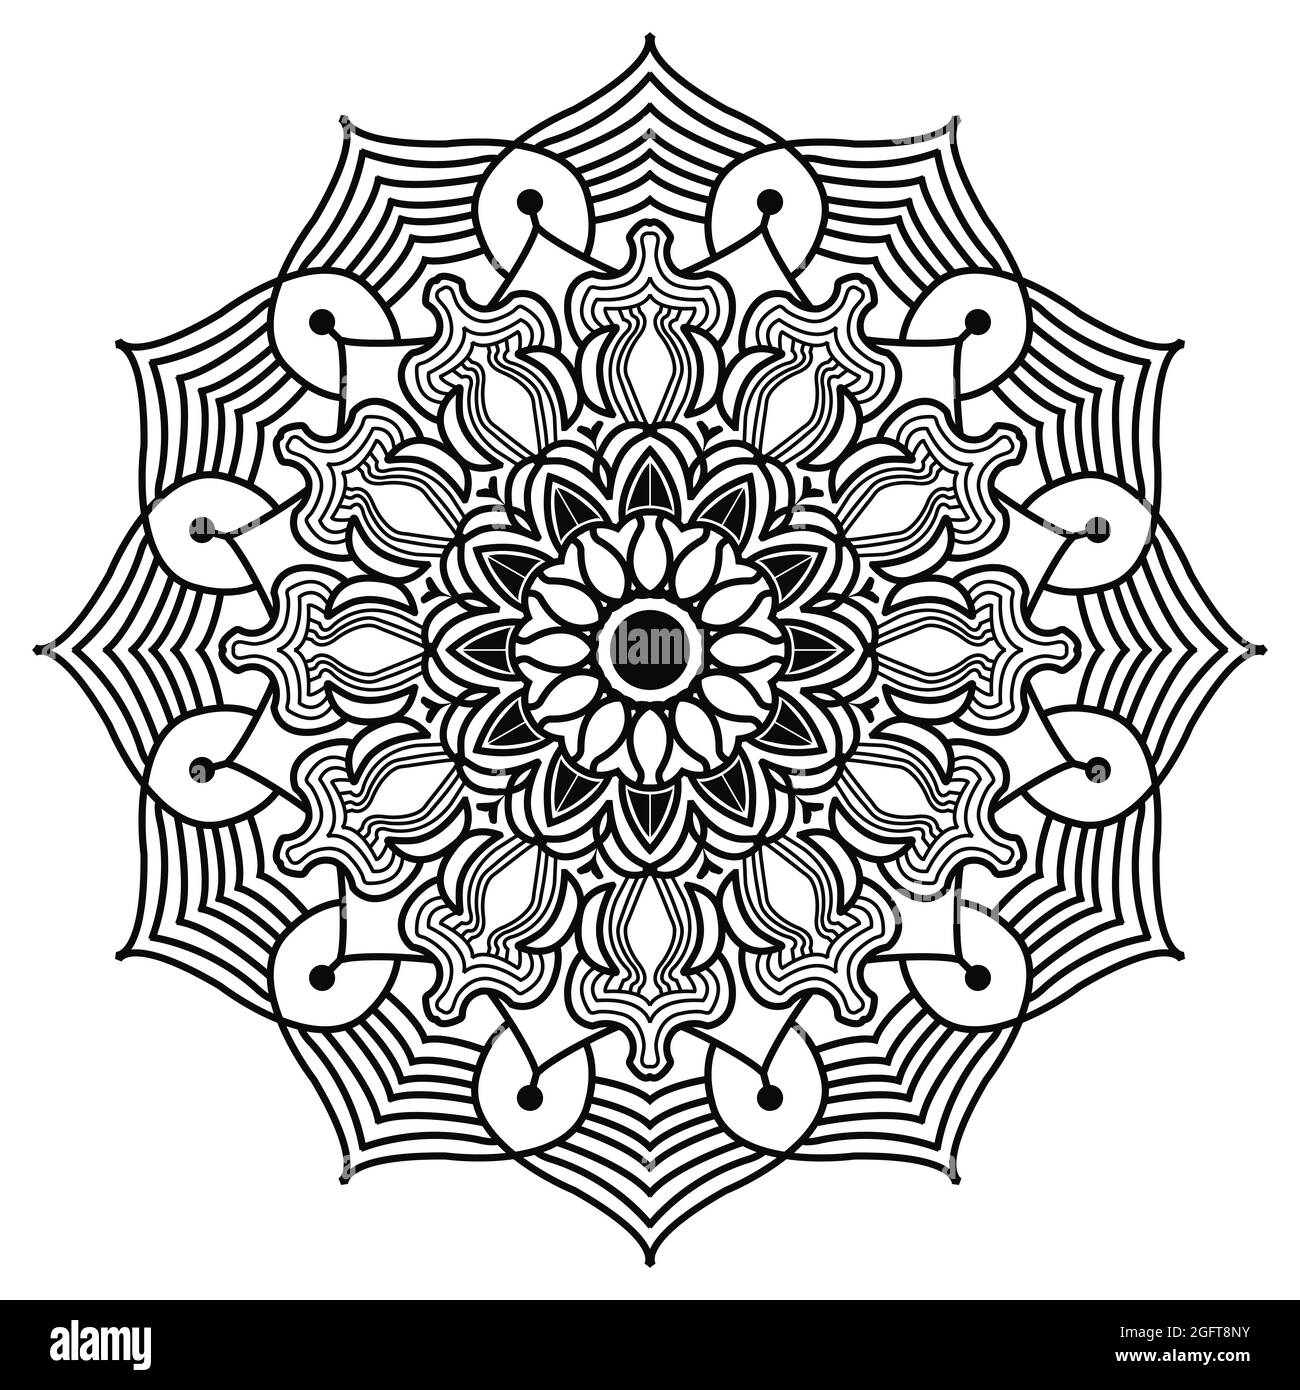 motif arabesque mandala représentant un élément géométrique islamique dessinant un motif floral avec des œuvres d'art au henné de style arabe Illustration de Vecteur